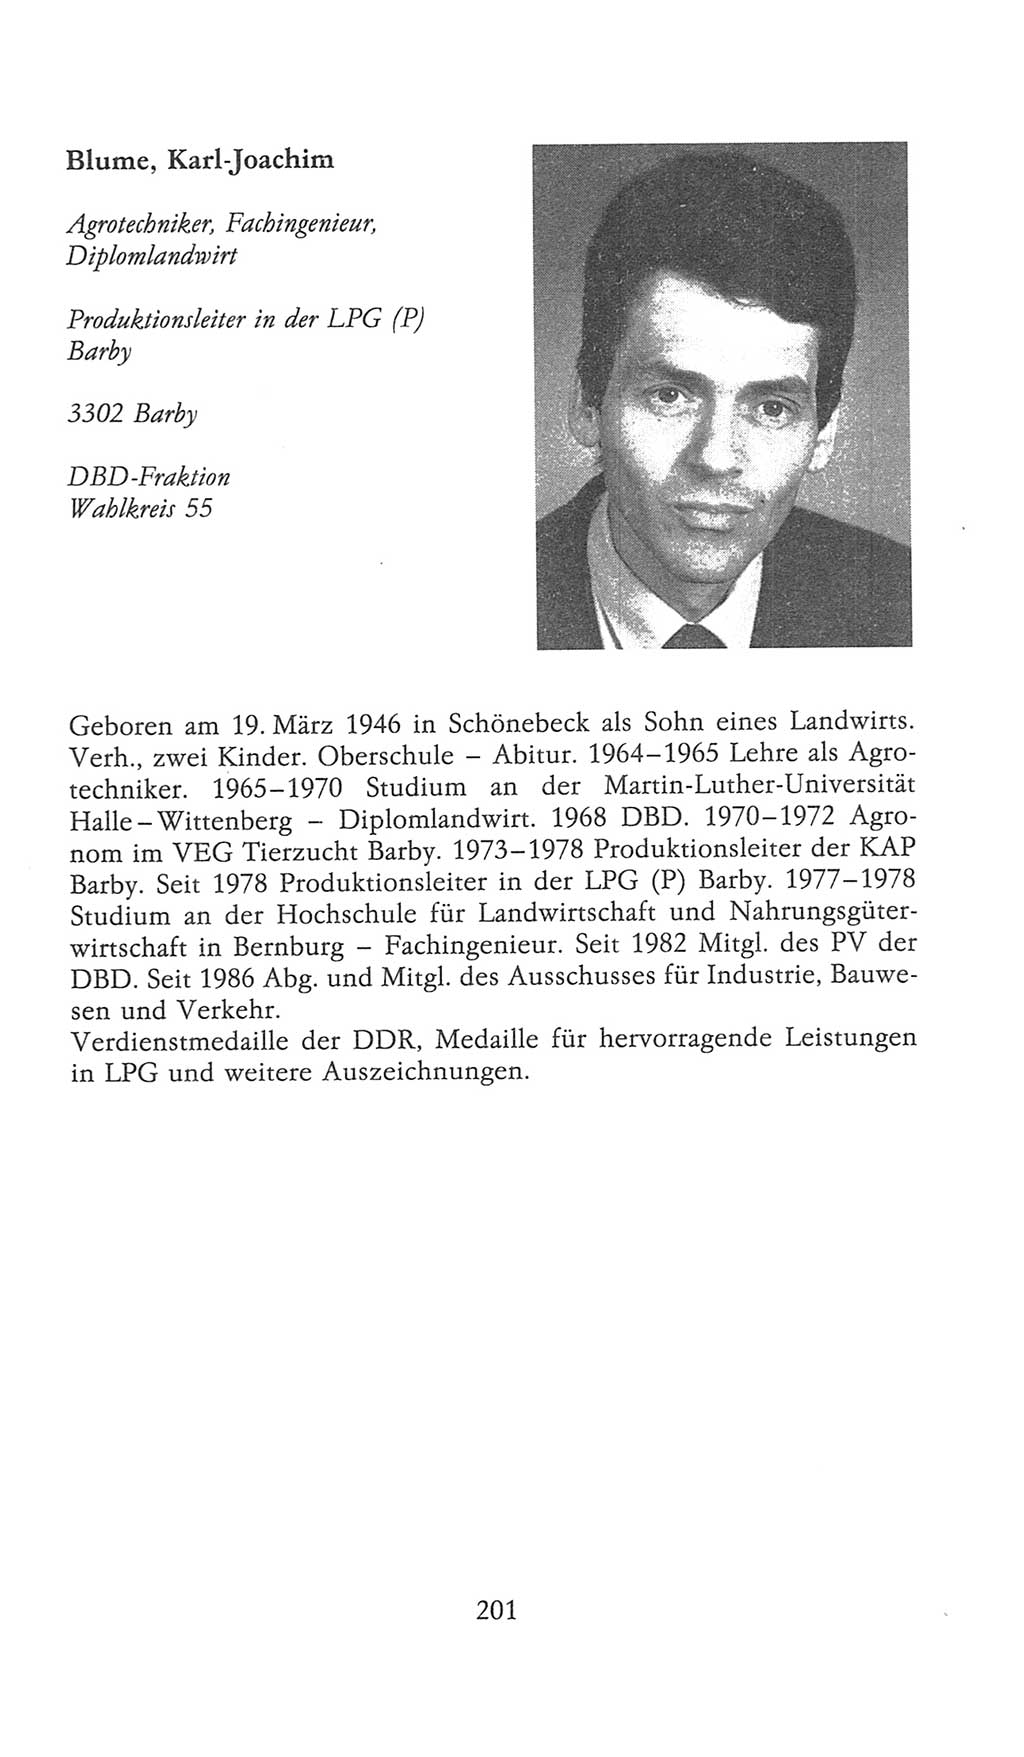 Volkskammer (VK) der Deutschen Demokratischen Republik (DDR), 9. Wahlperiode 1986-1990, Seite 201 (VK. DDR 9. WP. 1986-1990, S. 201)